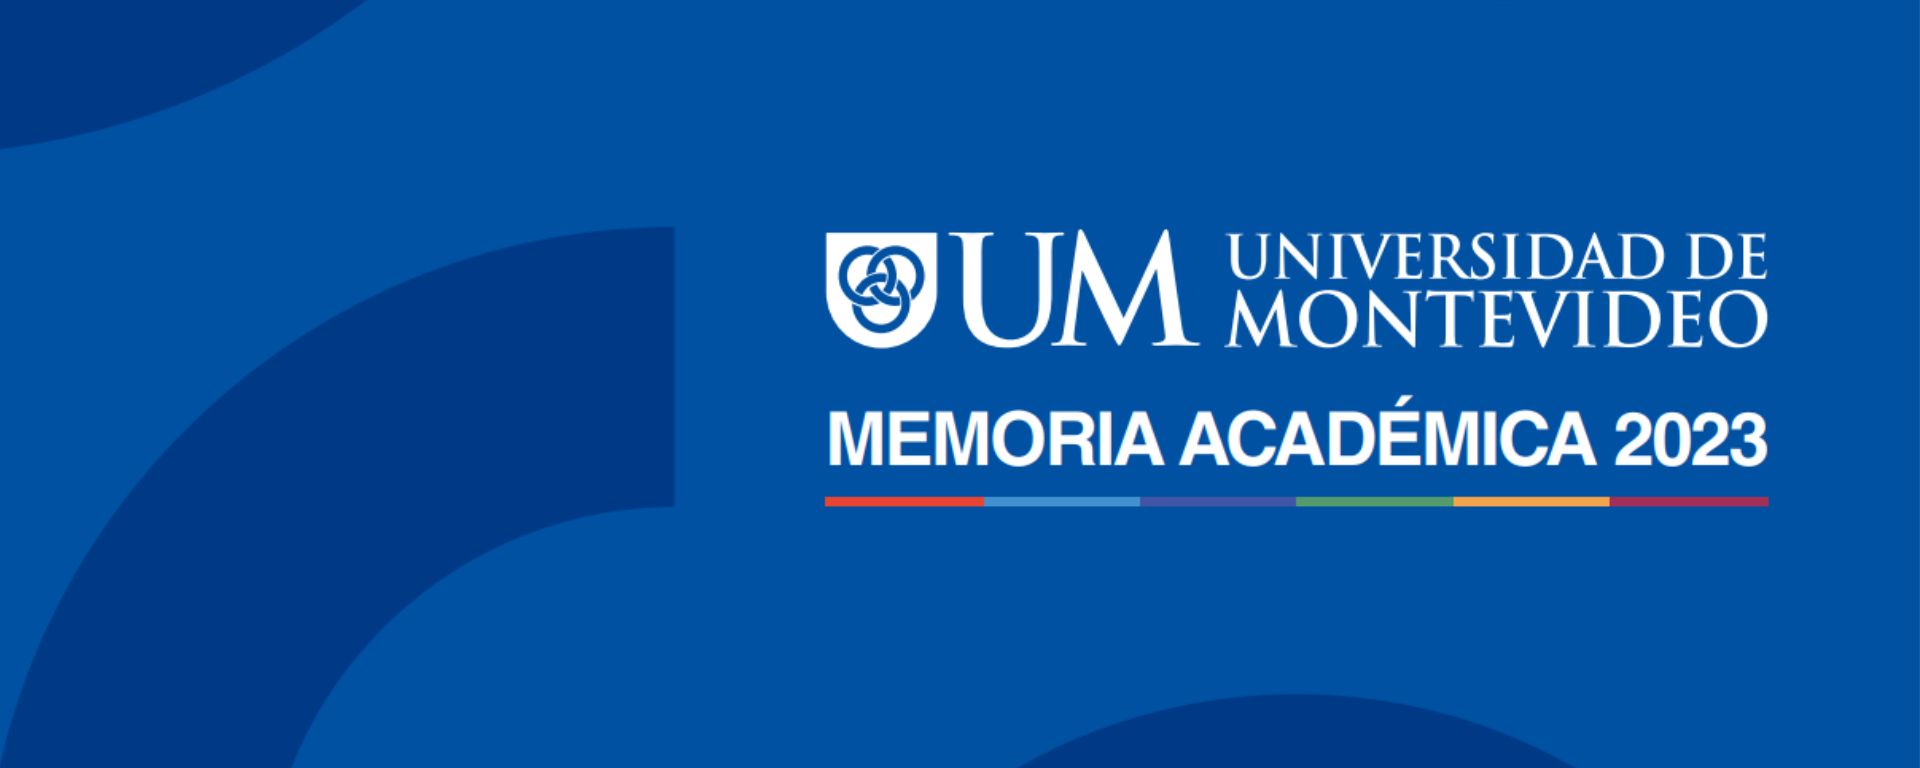 Memoria Académica UM 2023